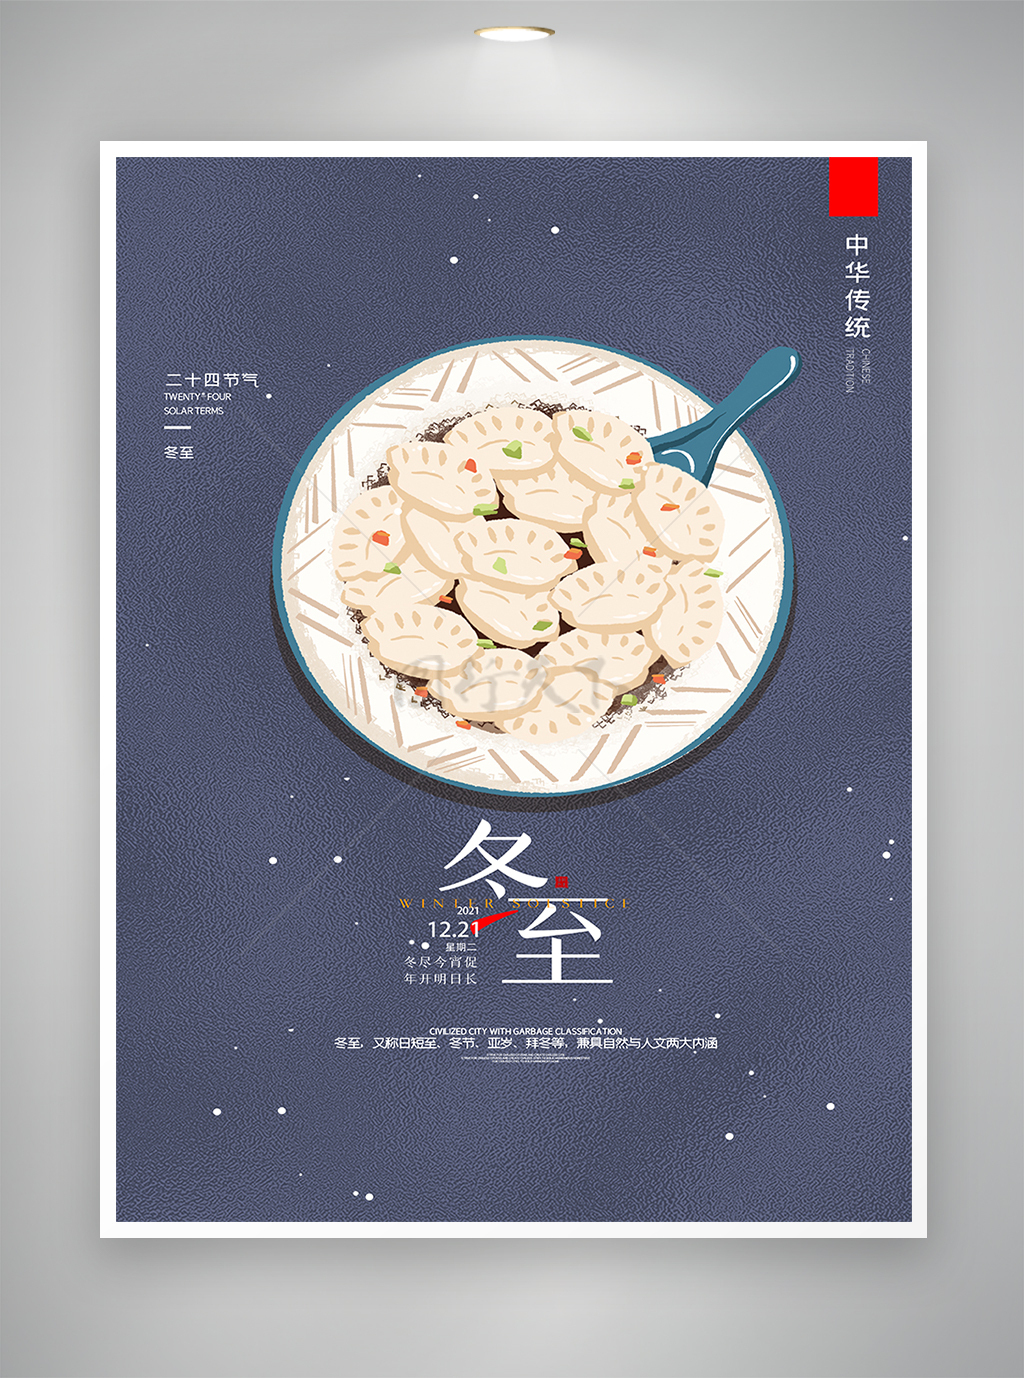 冬至节气宣传手绘饺子海报